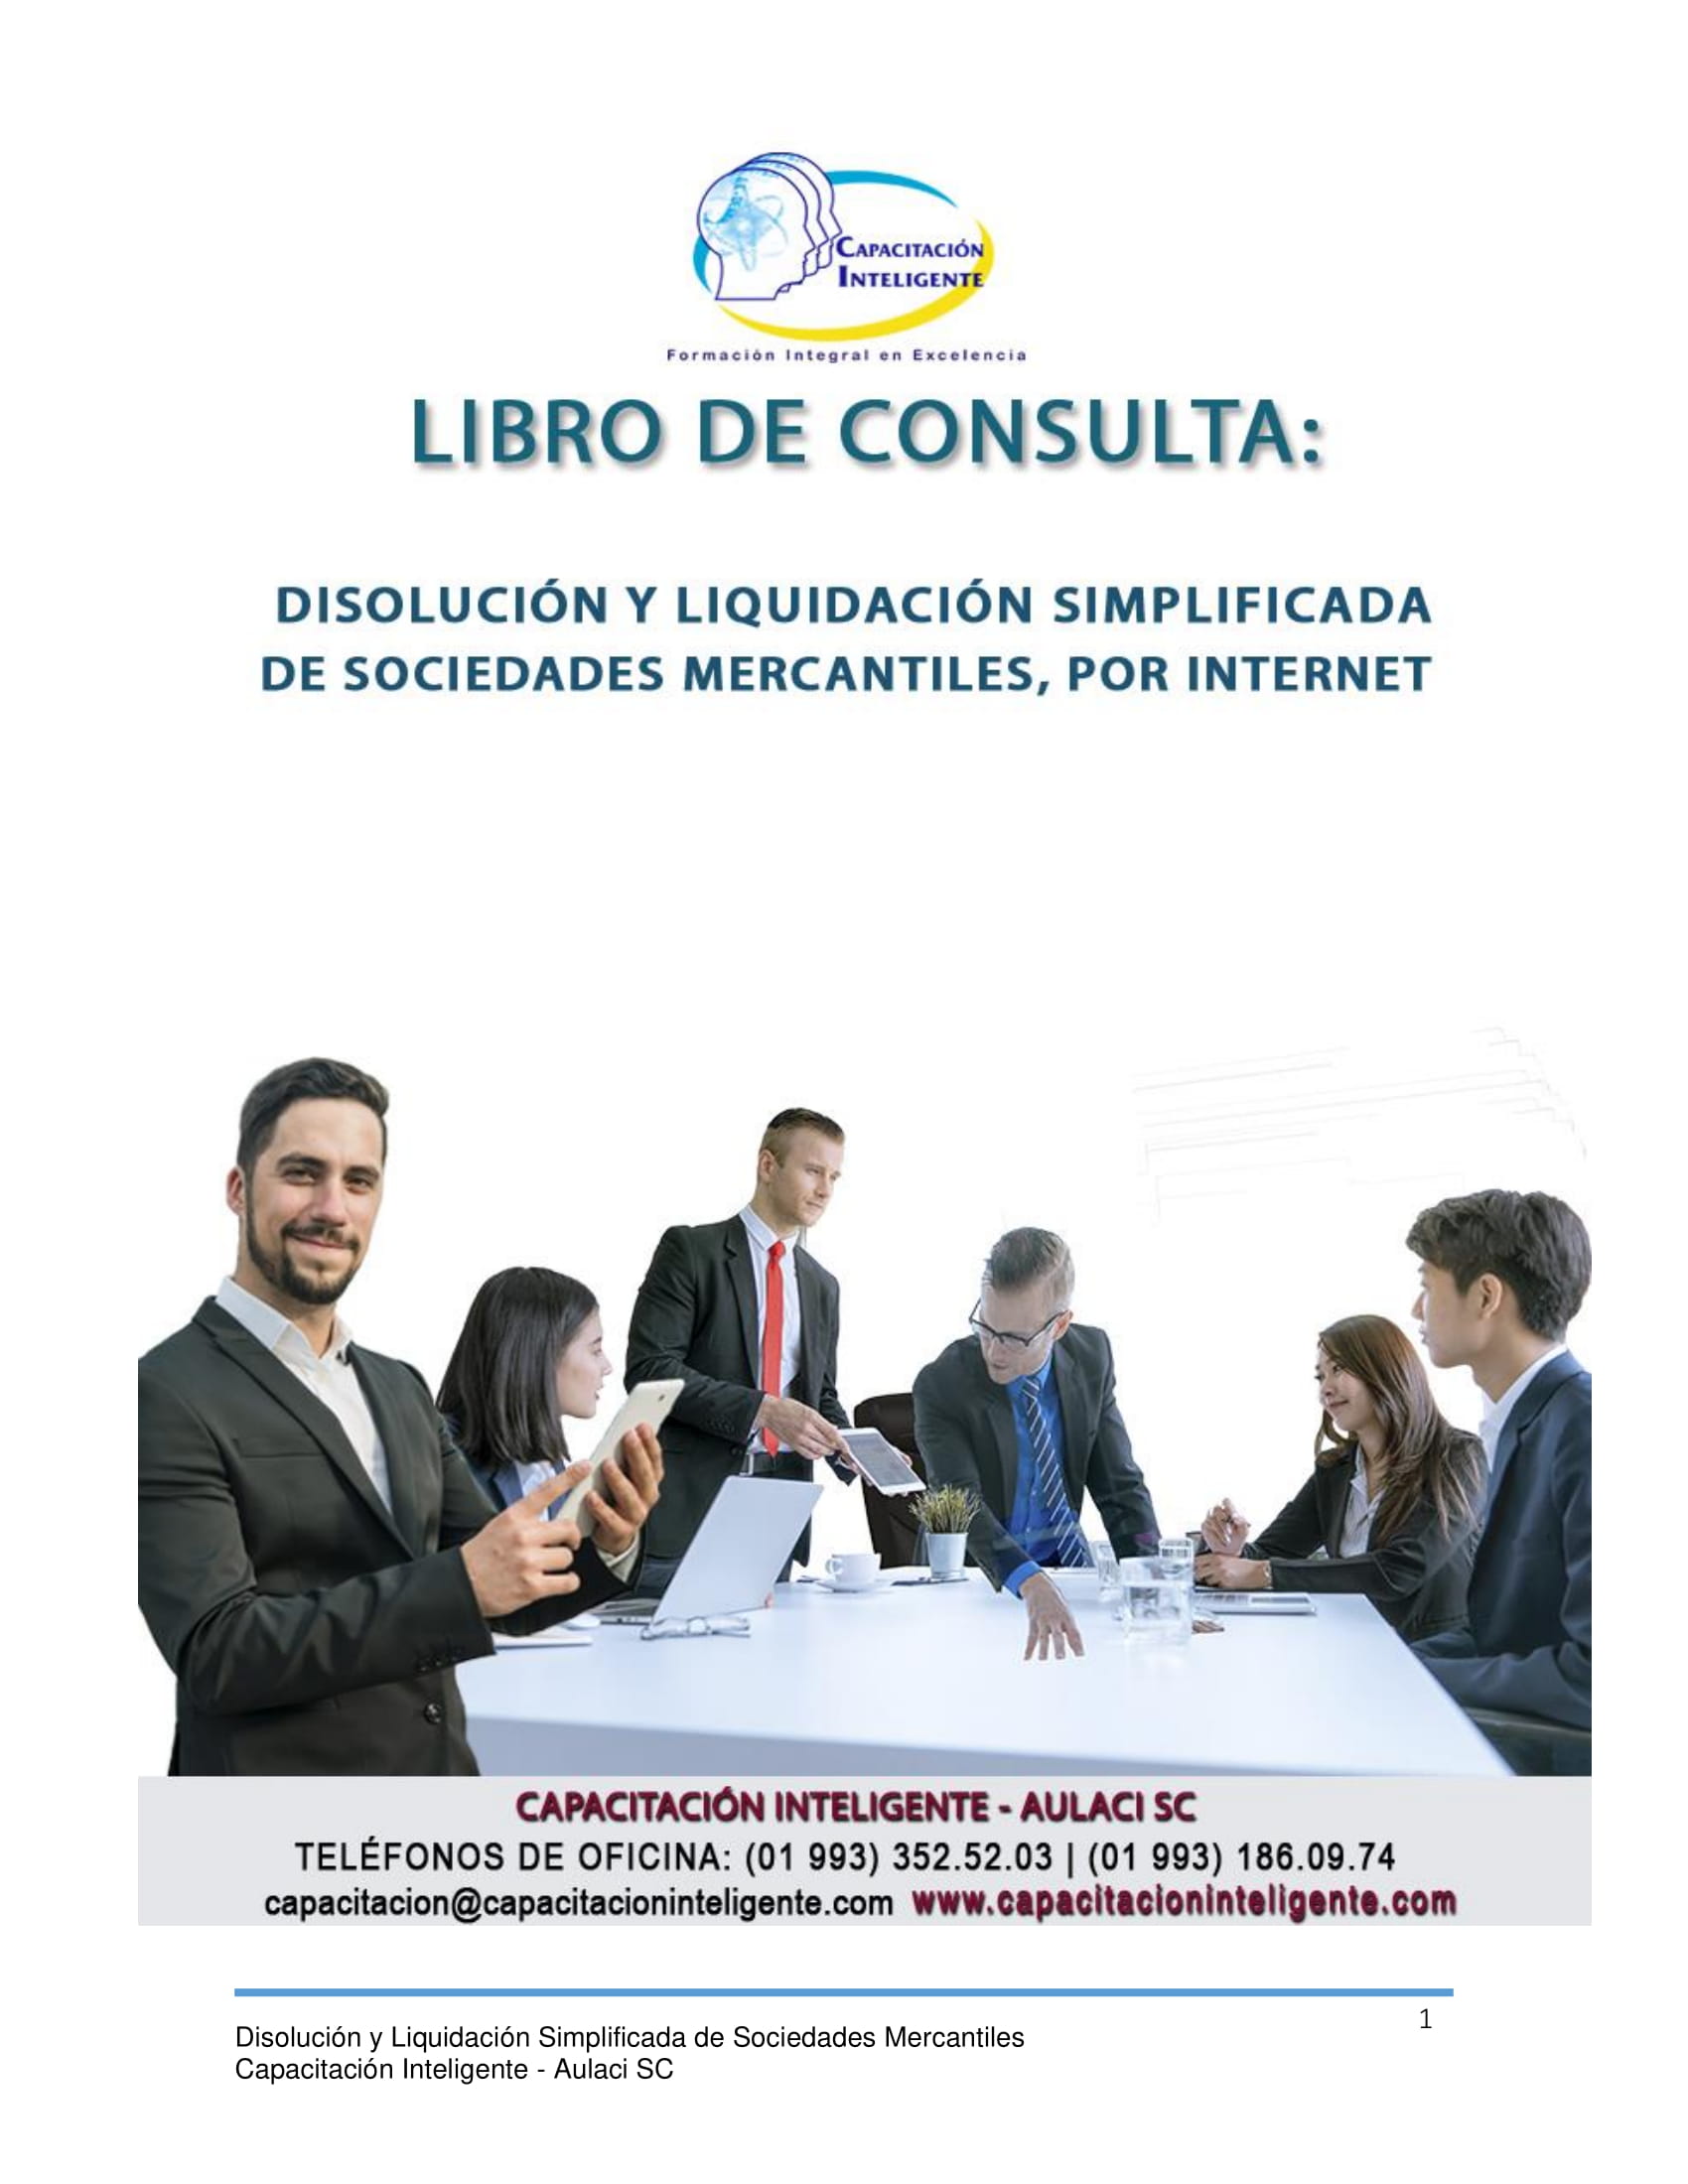 Libro_Consulta_Disolucion_Liquidacion_Simplificada_Sociedades_Mercantiles-01